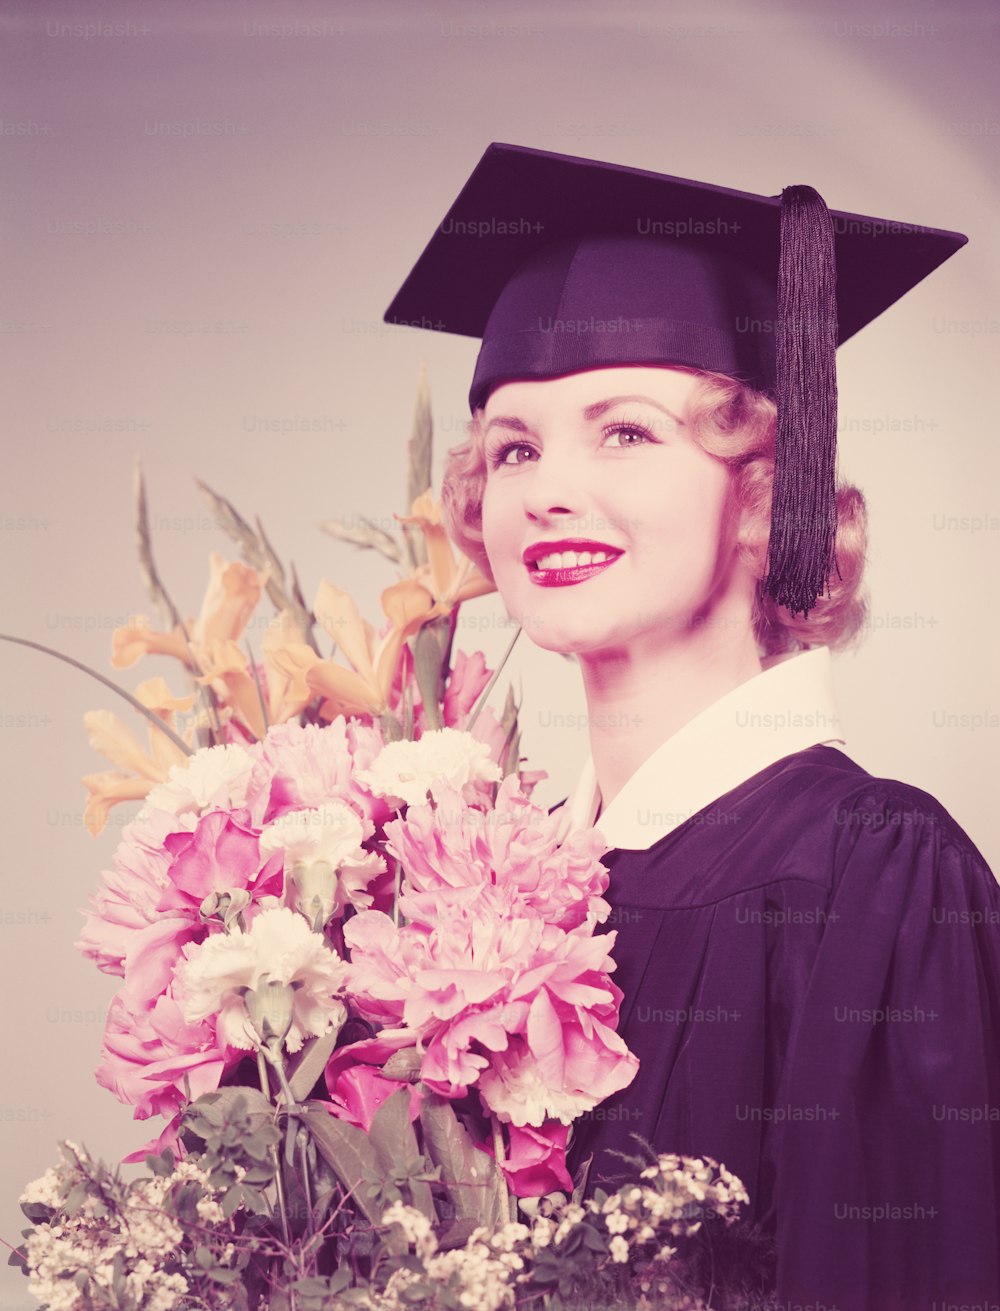 ÉTATS-UNIS - Vers les années 1950 : Jeune femme portant des robes de graduation et un mortier, tenant un bouquet de fleurs.